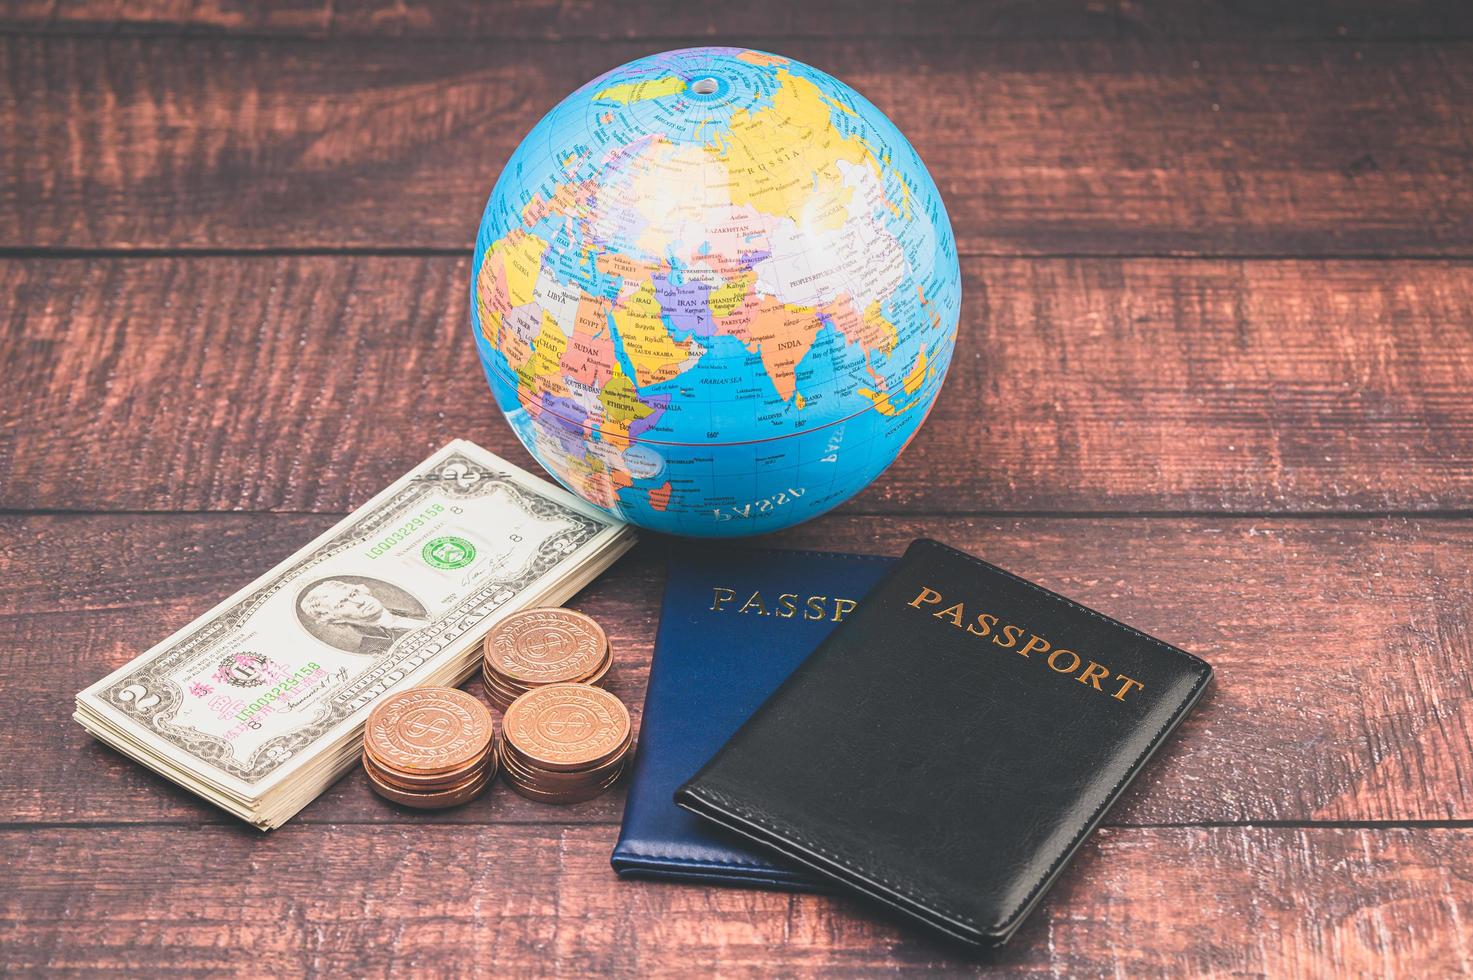 Reisepass sparen Geld für Reisen und Geschäfte auf der ganzen Welt. foto